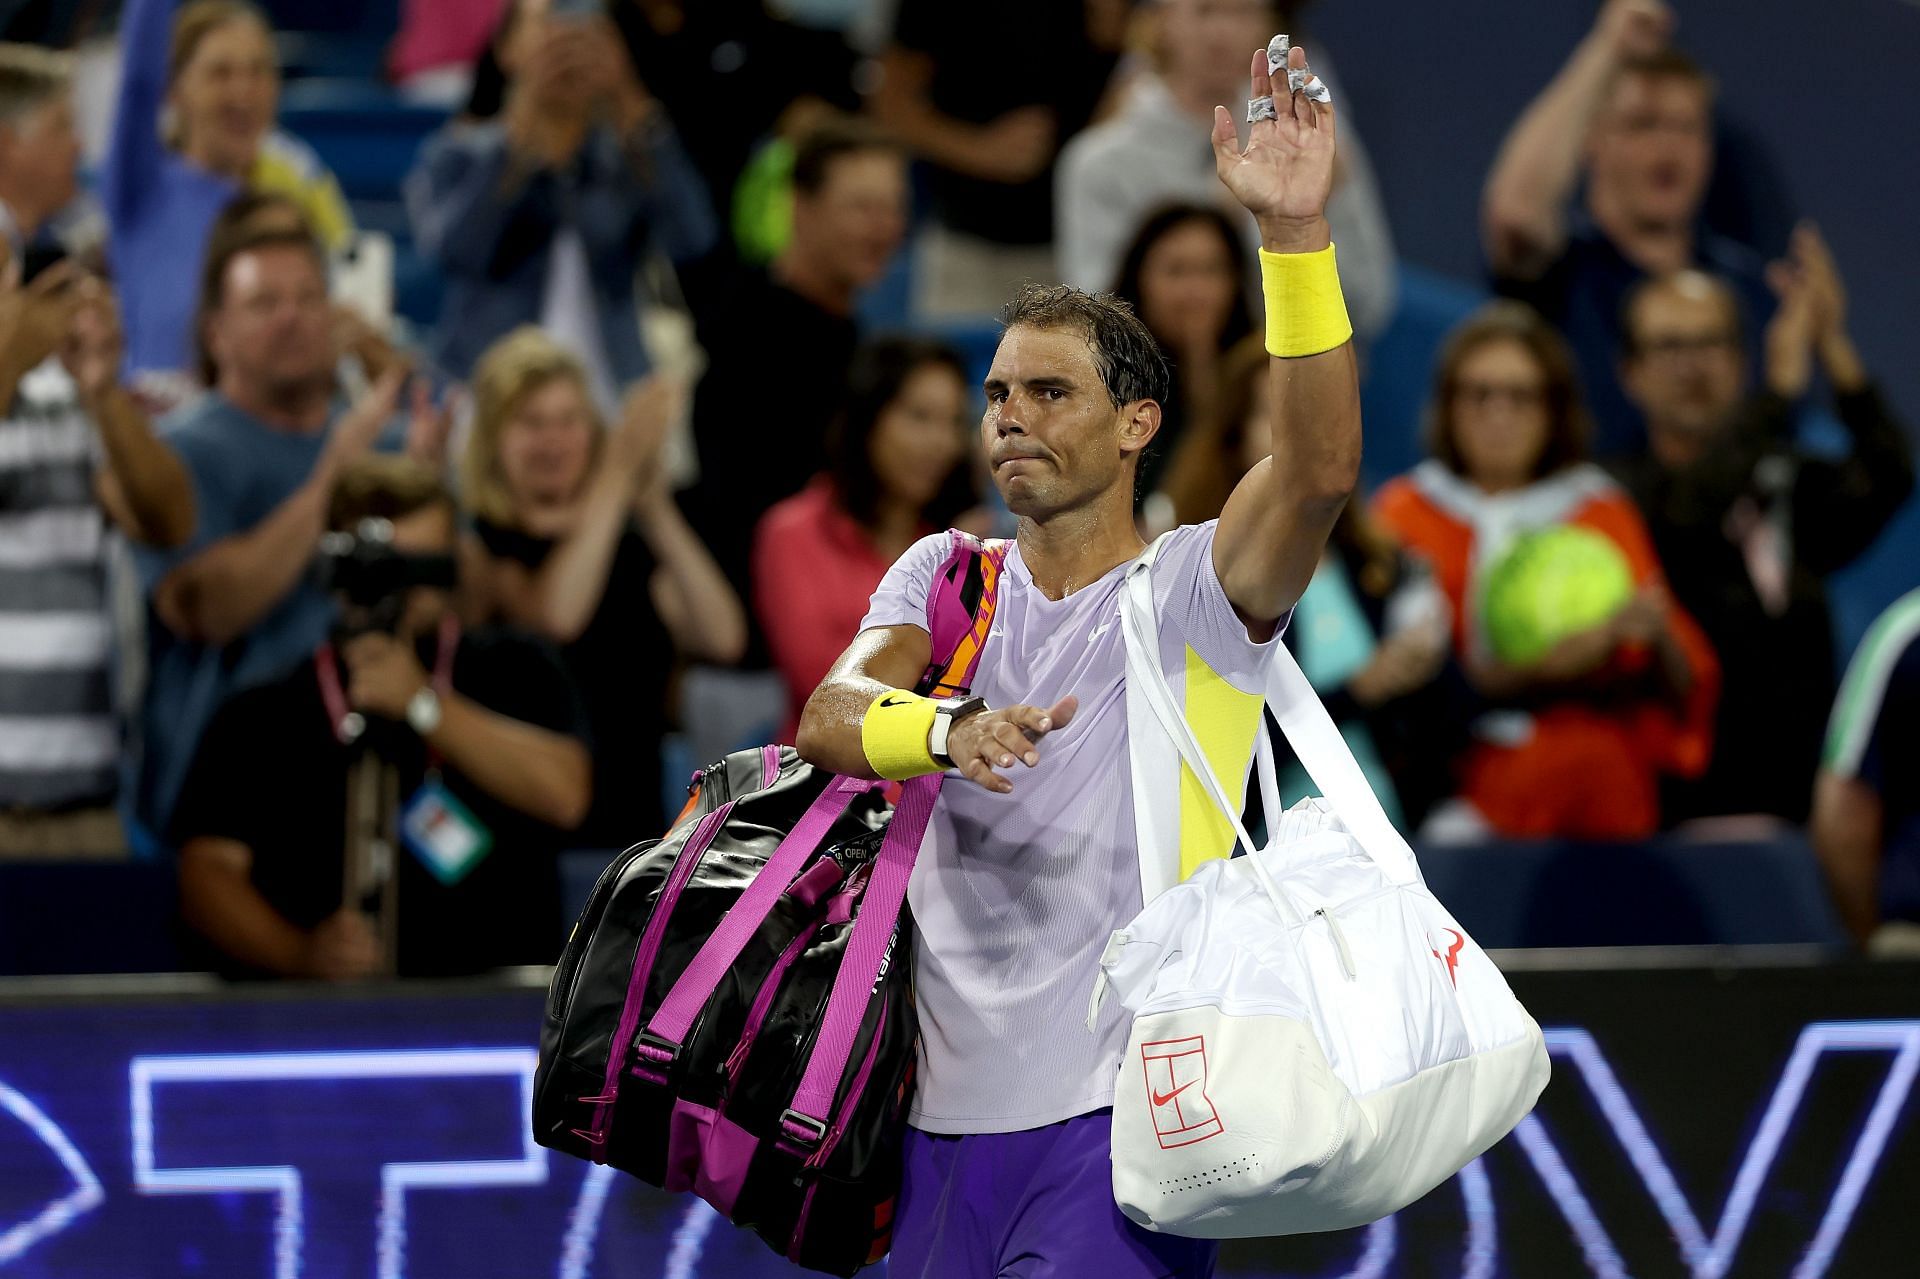 Rafael Nadal acknowledging the crowd in Cincinnati